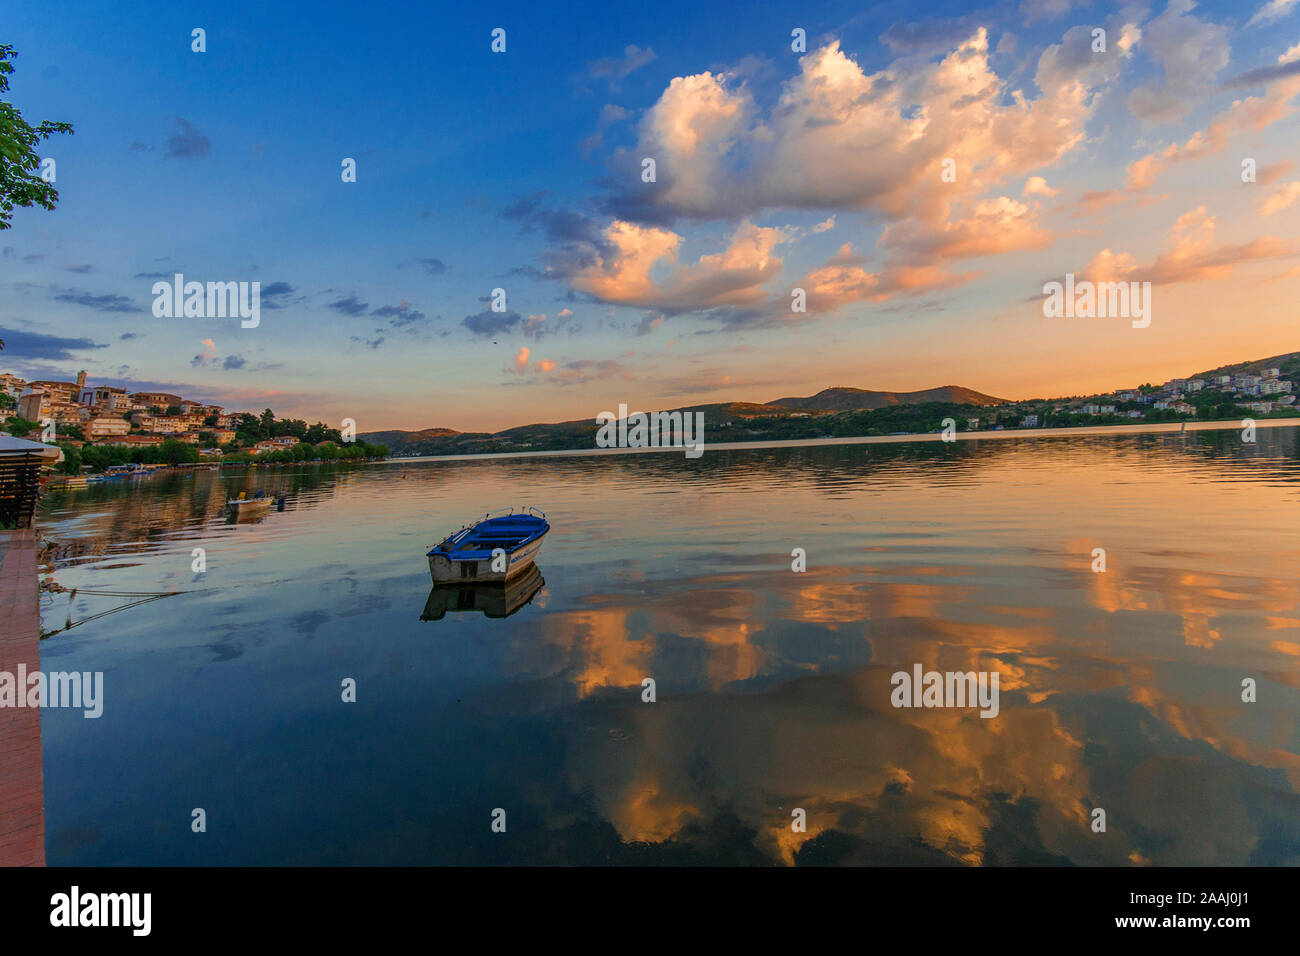 Una barca floating pacificamente su un molto ancora e tranquillo lago al crepuscolo in Kastoria, Grecia. Bel tramonto colori del blu, rosa, giallo e arancione. Foto Stock